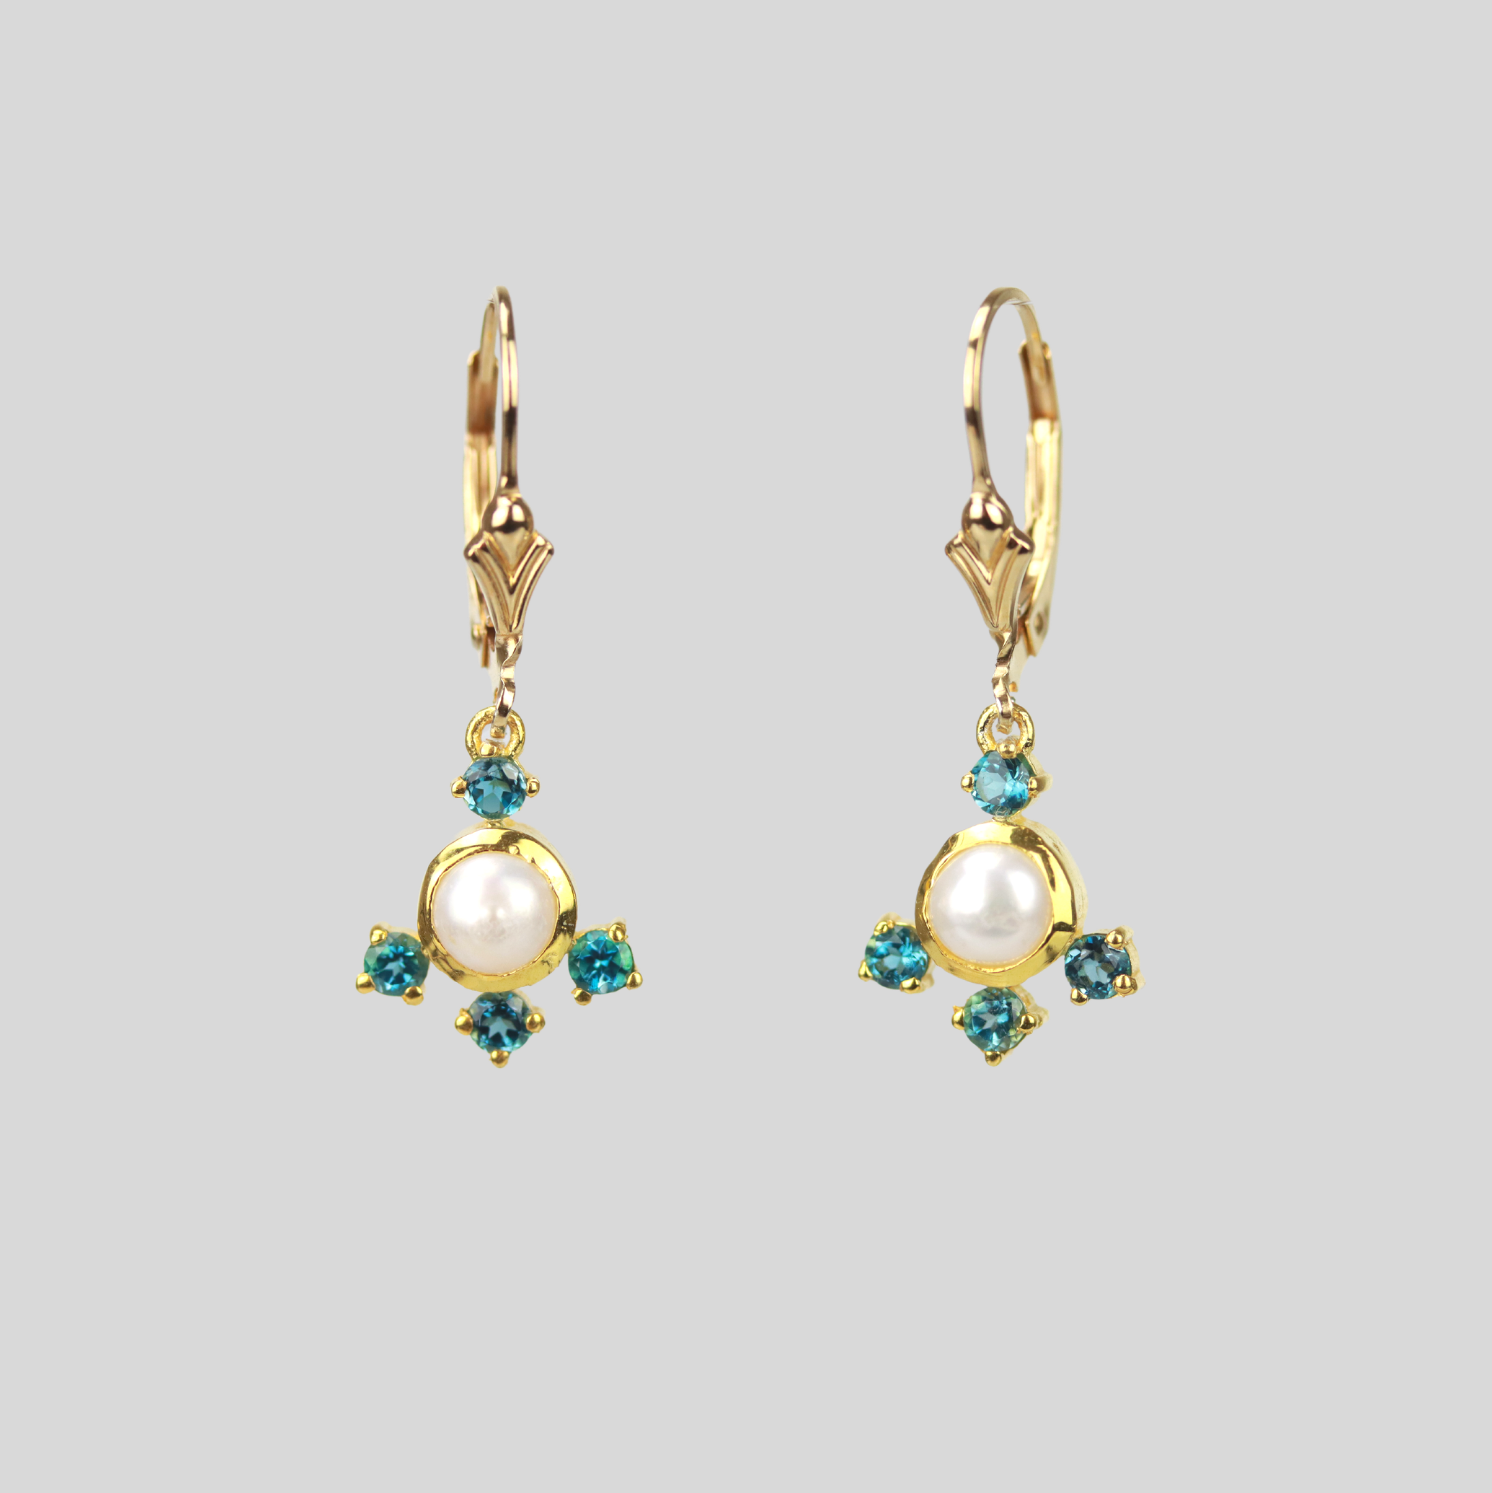 Multi gemstone chandelier earrings in pearl and london topaz